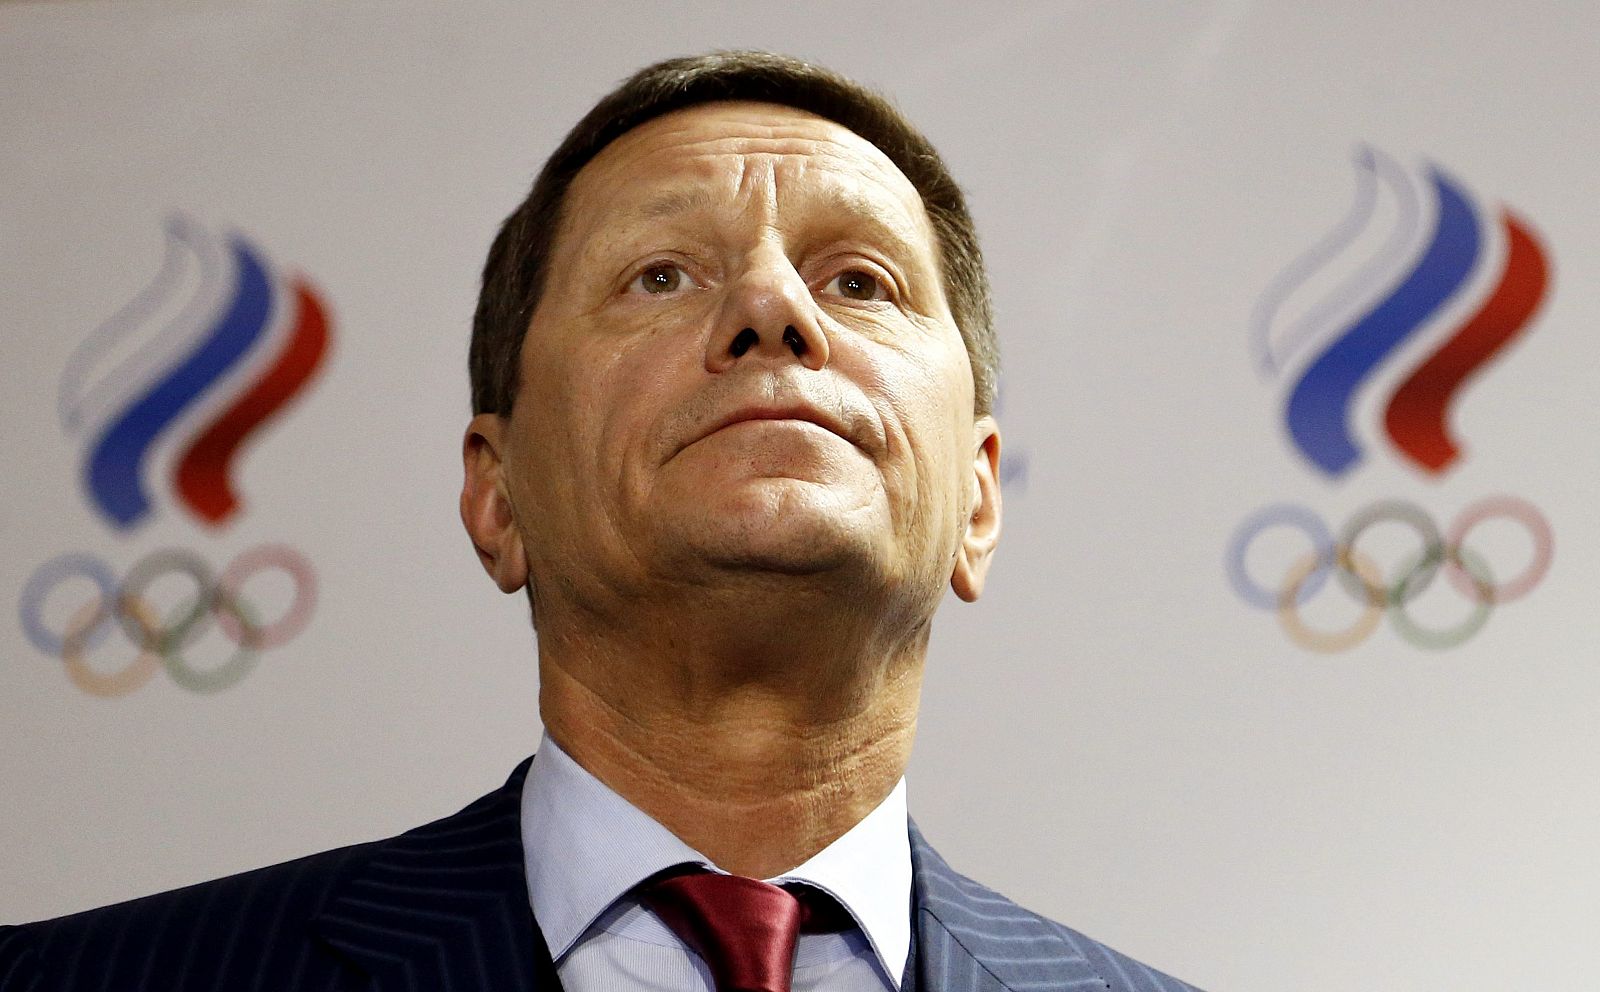 El presidente del Comité Olímpico Ruso (COR), Alexandr Zhúkov durante una rueda de prensa.